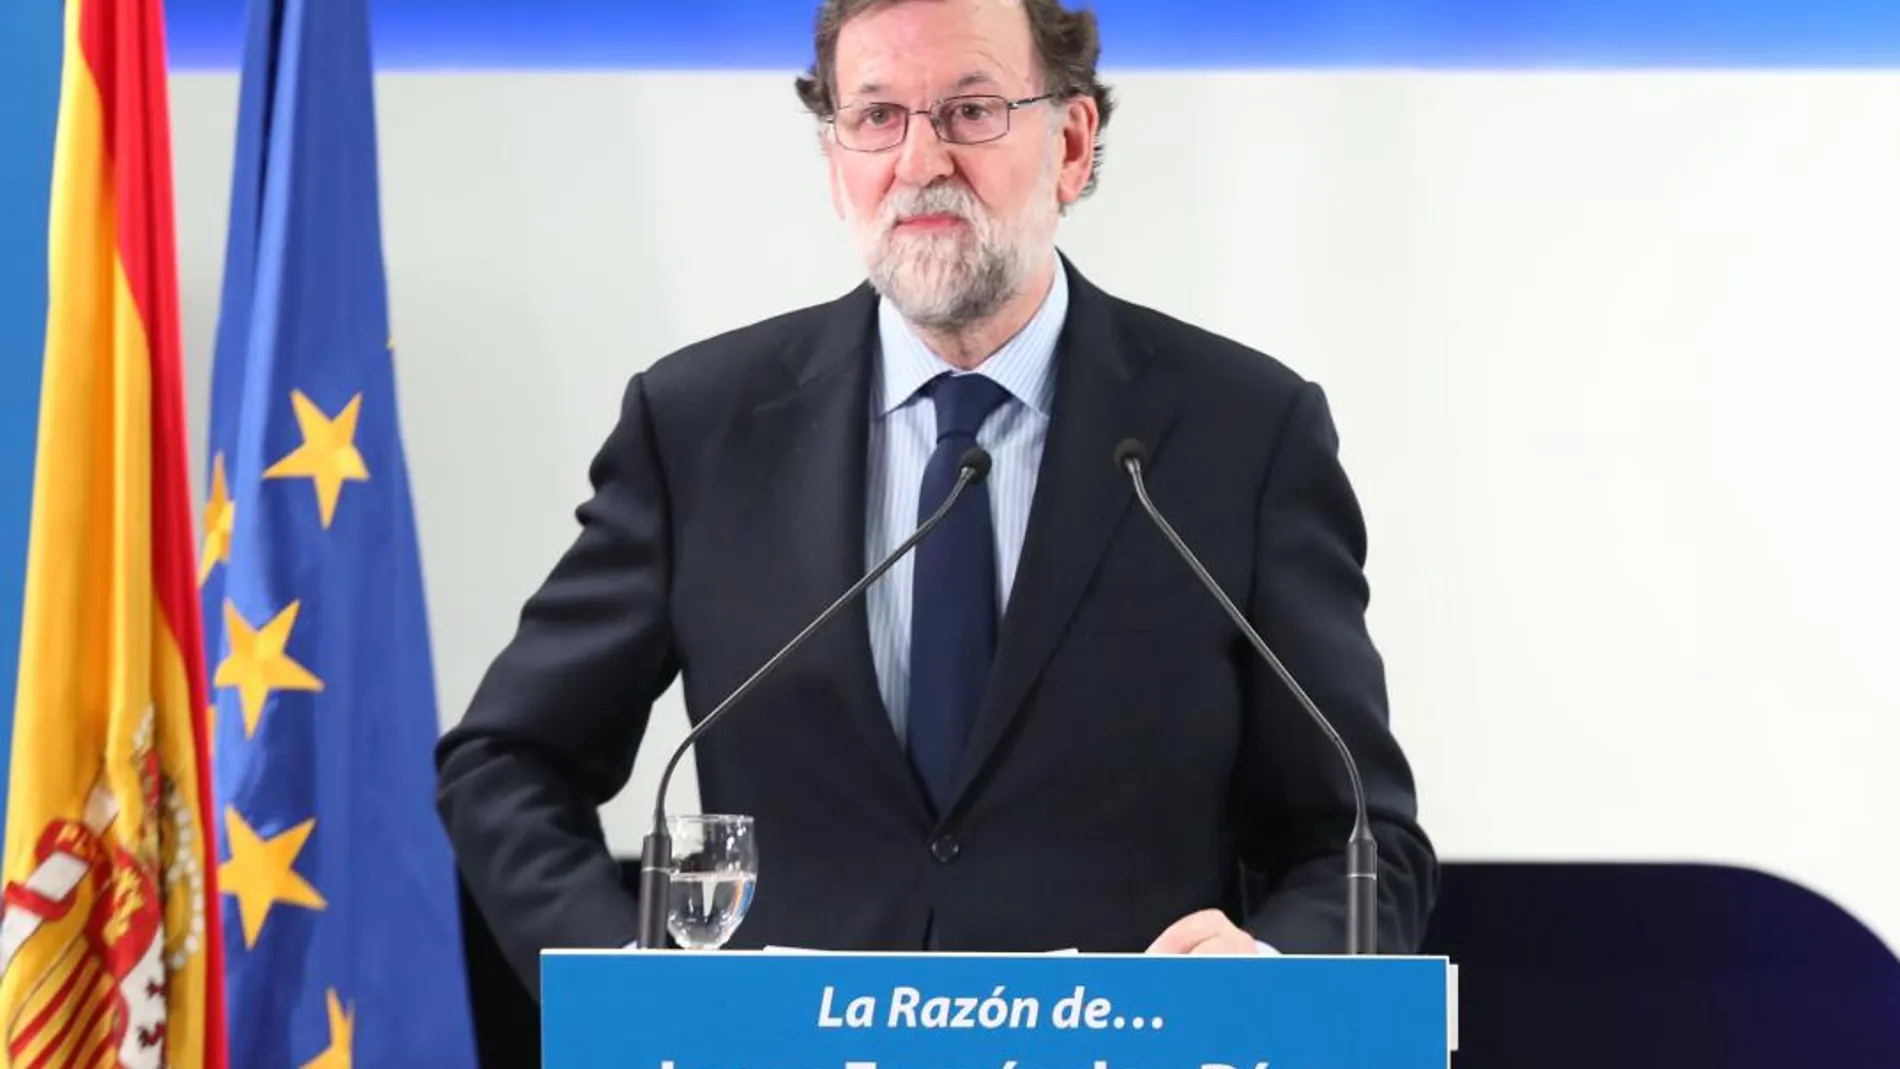 El presidente del Gobierno, durante la introducción a la LA RAZÓN DE... Jorge Fernández Díaz